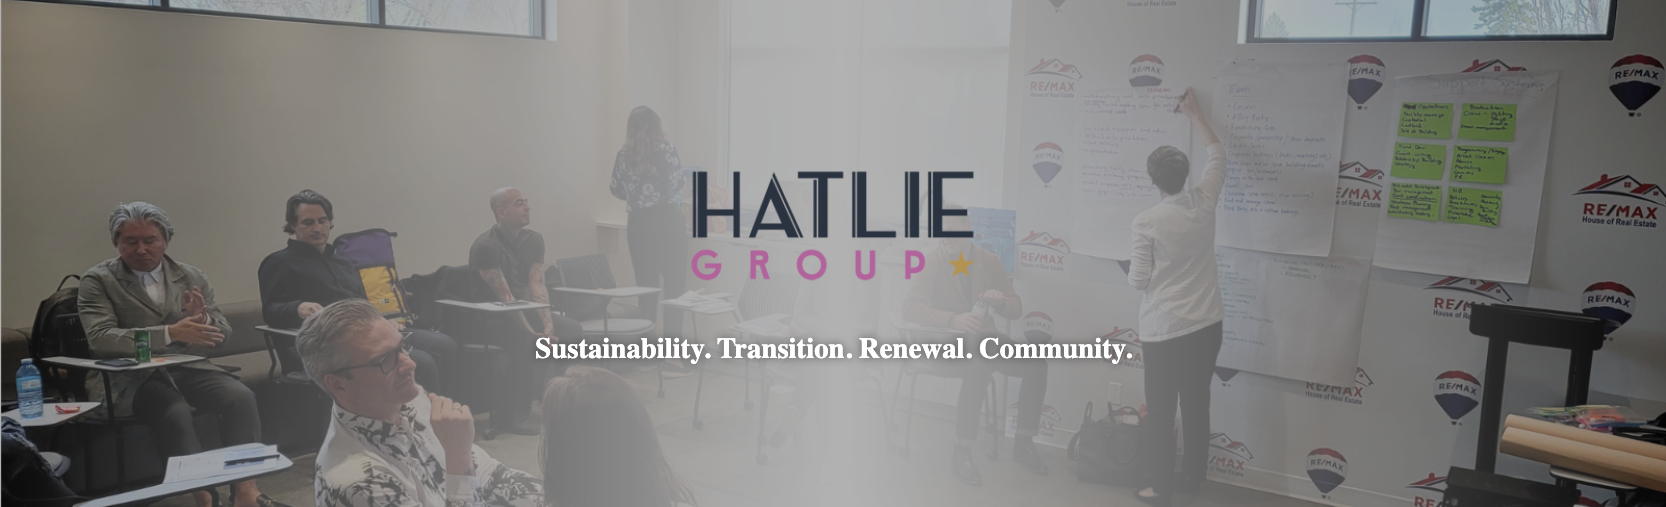 Hatlie Group Sponsorship Banner